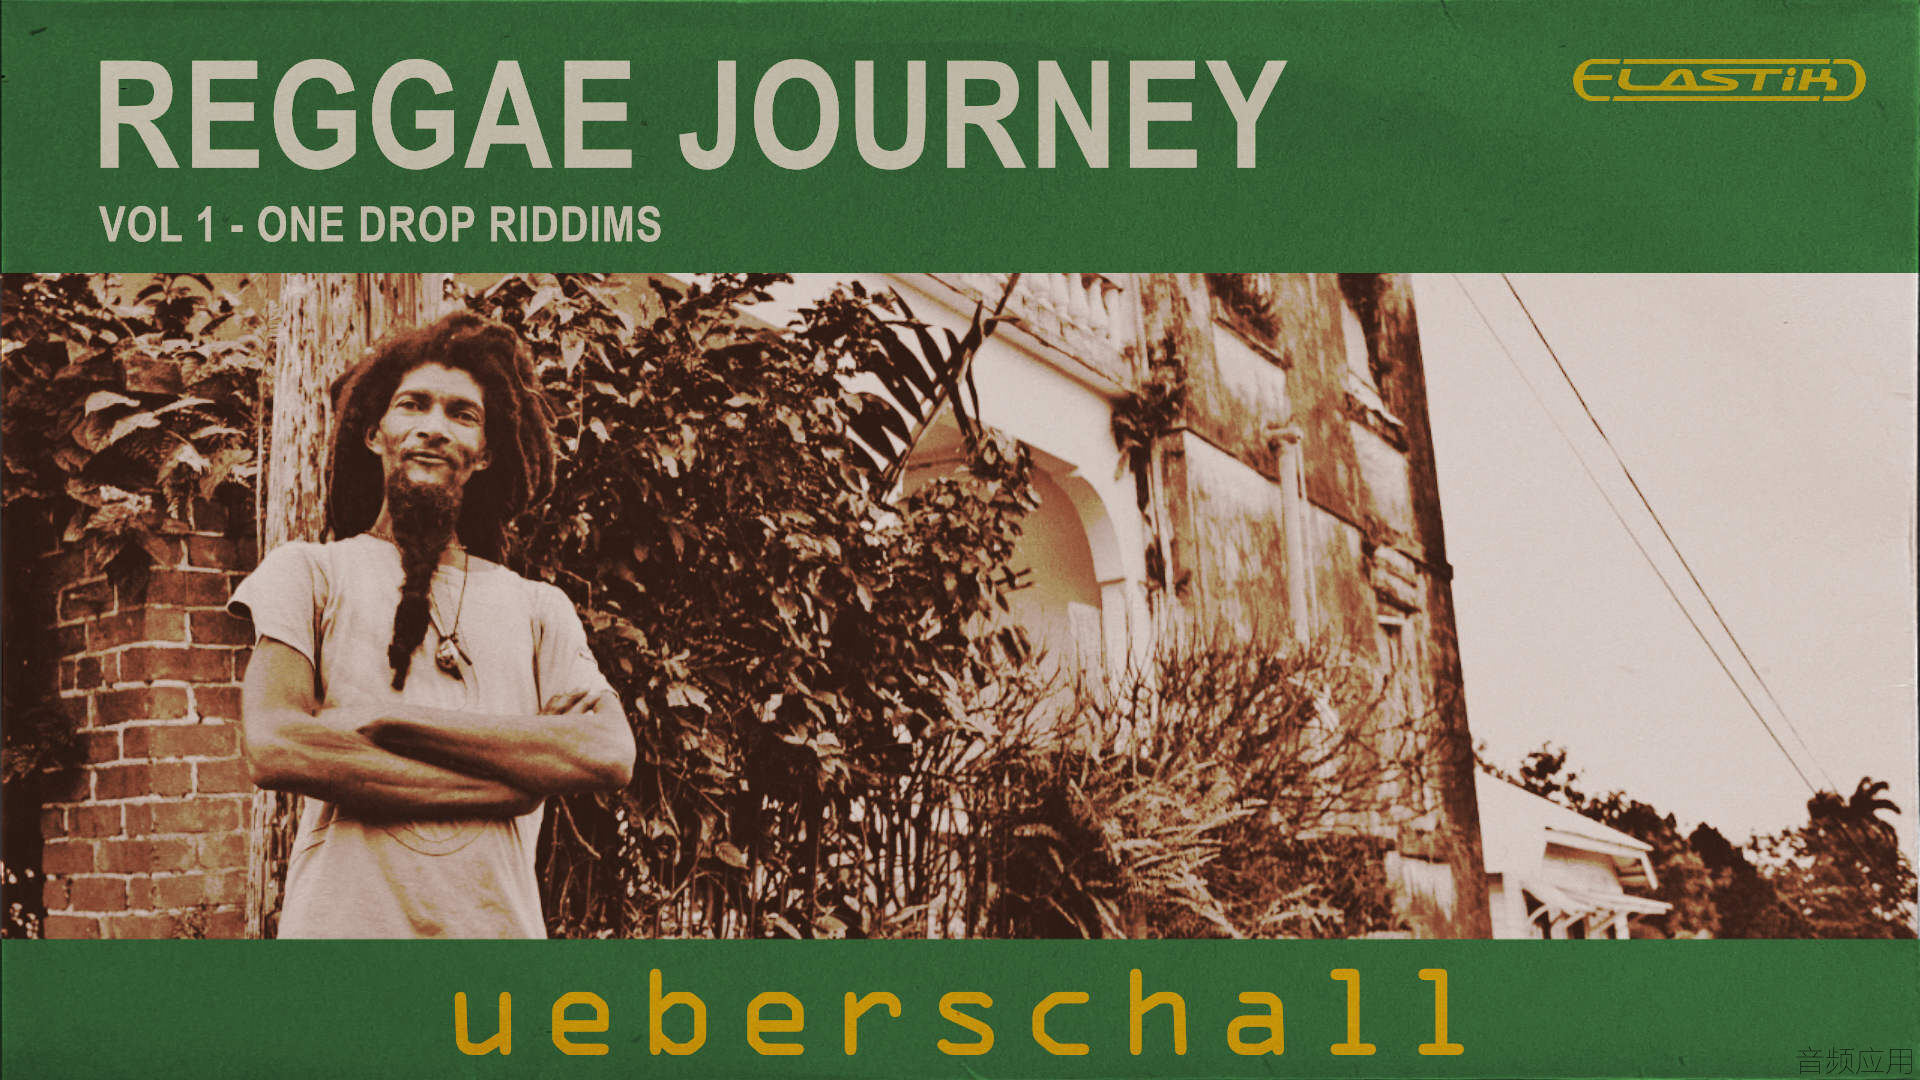 reggae-journey-ueberschall-1920x1080.jpg